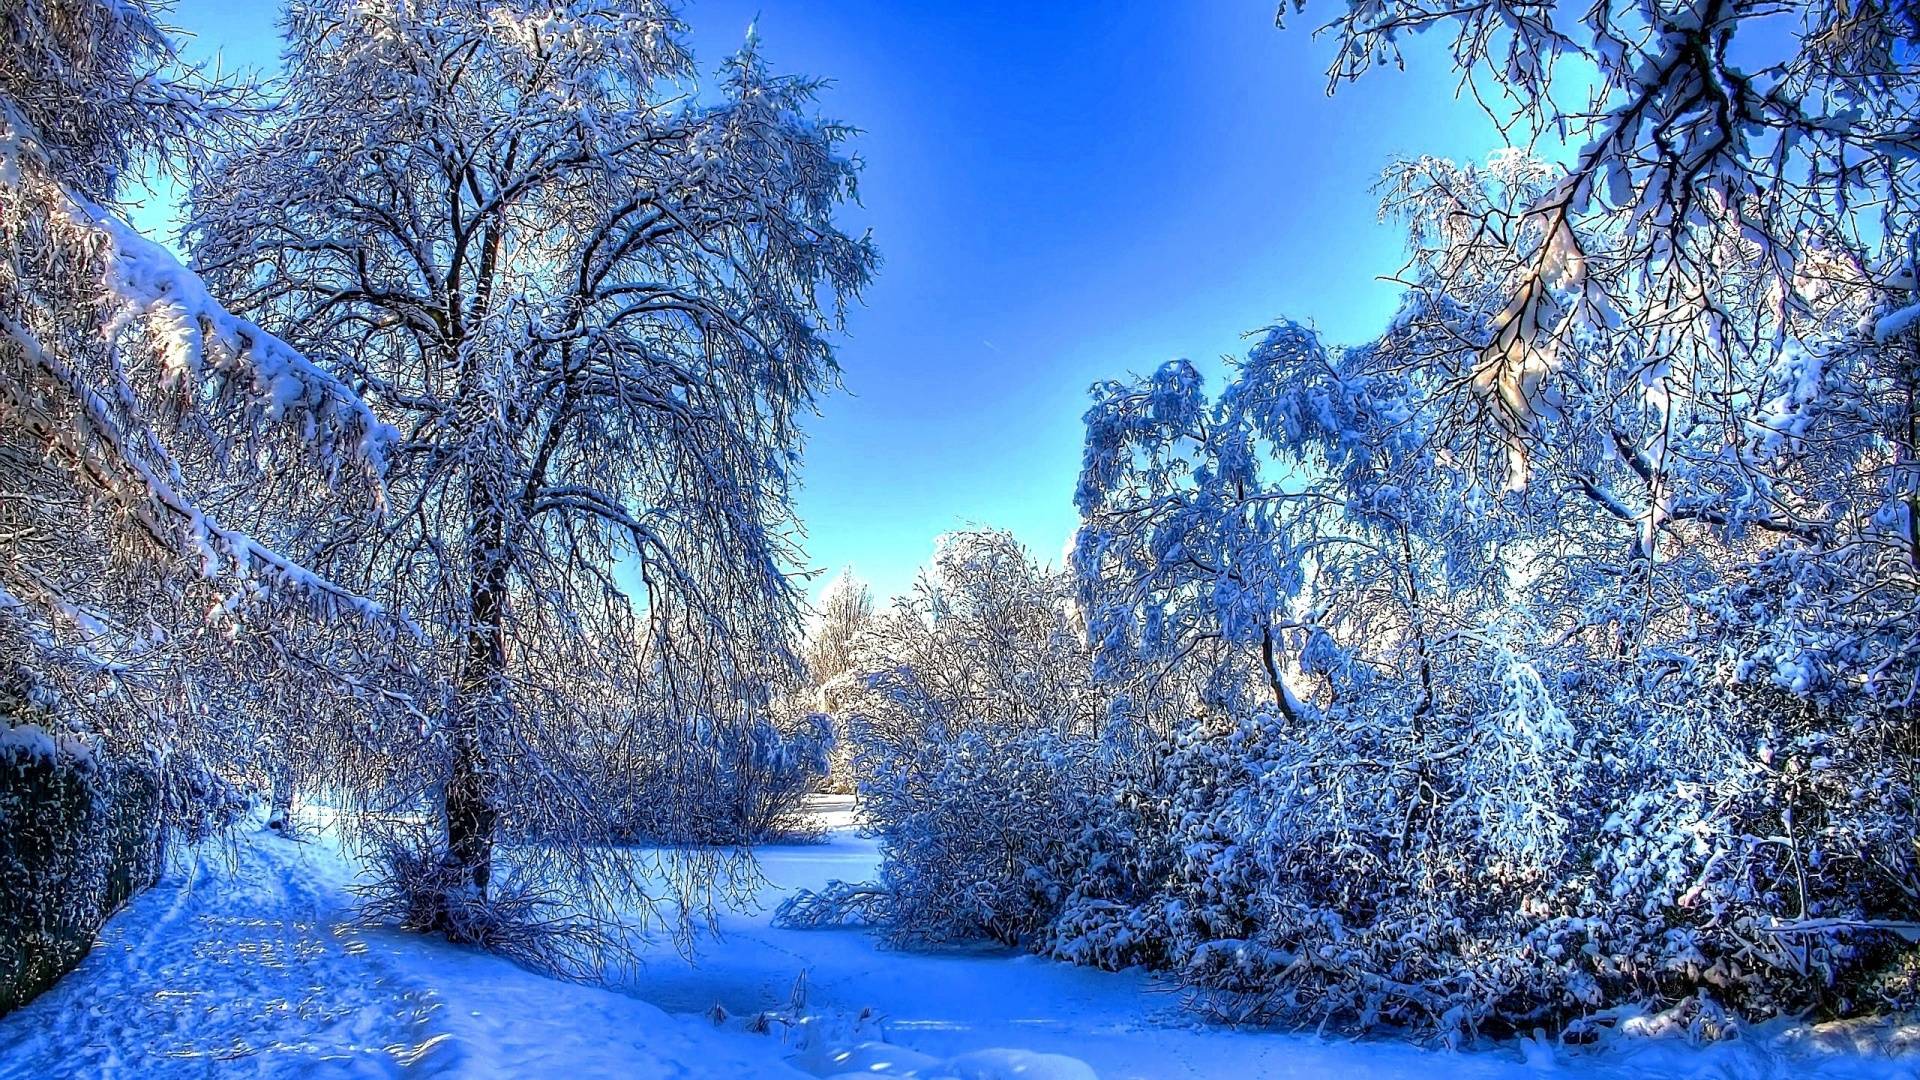 Winter Landscape Wallpaper Full HD - PixelsTalk.Net